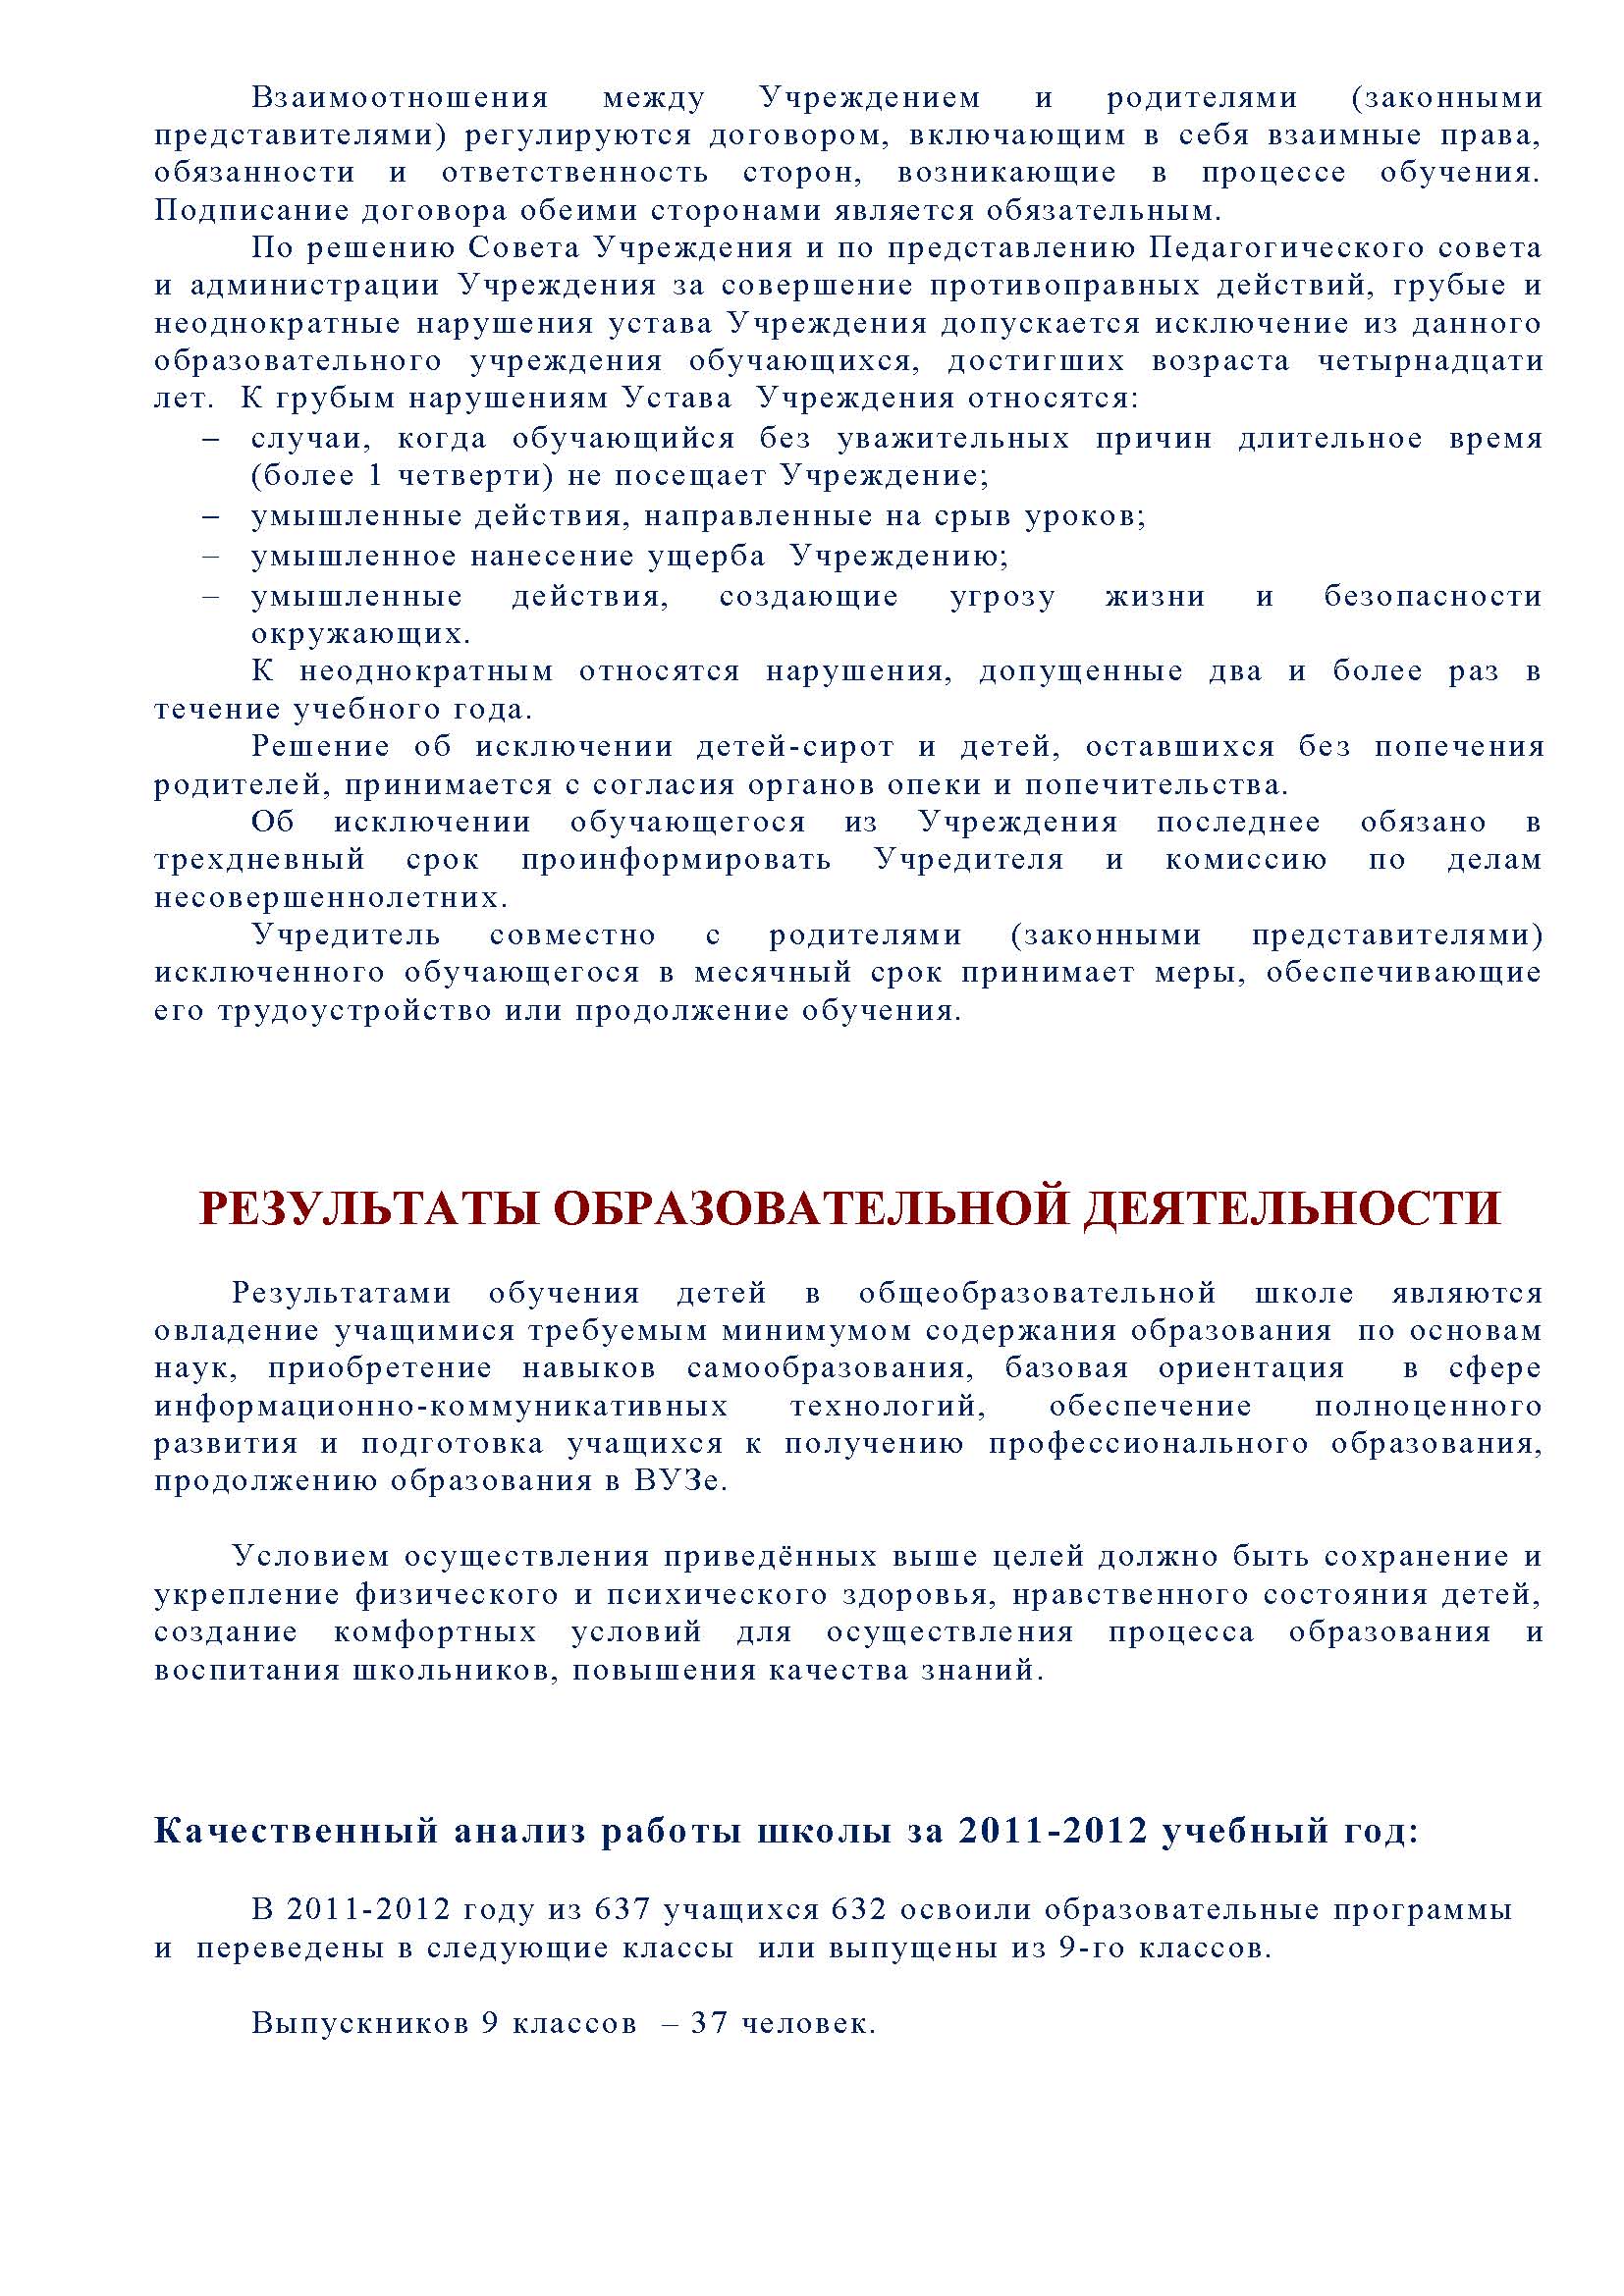 Публичный доклад 2011-2012 Стр.15